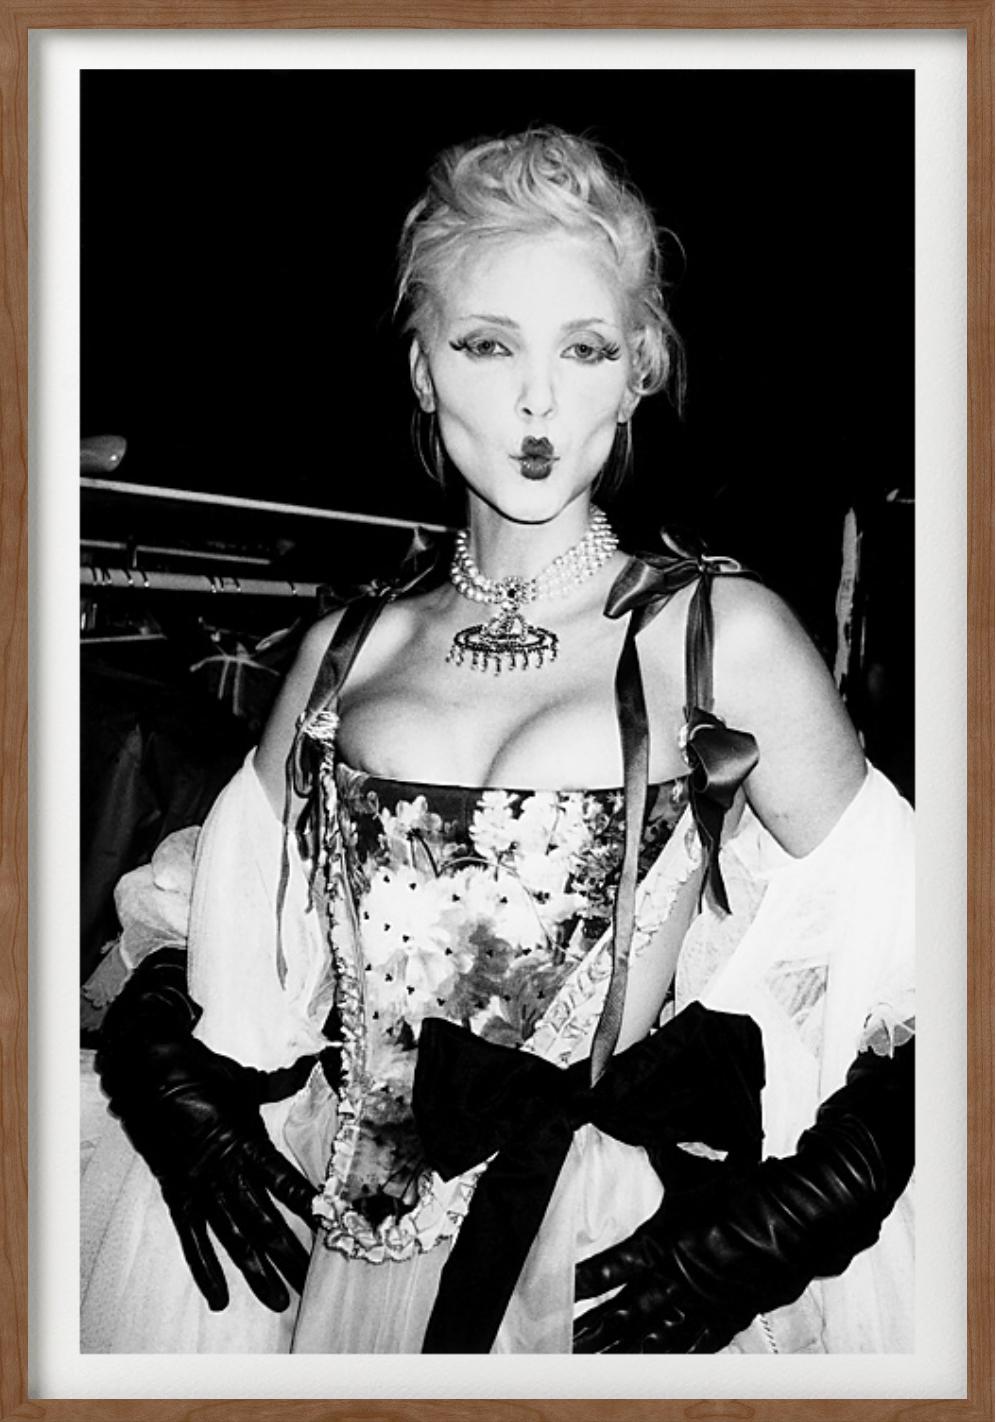 'Nadja Auermann for Vivienne Westwood Show, Paris' - fine art photographym  - Black Black and White Photograph by Roxanne Lowit